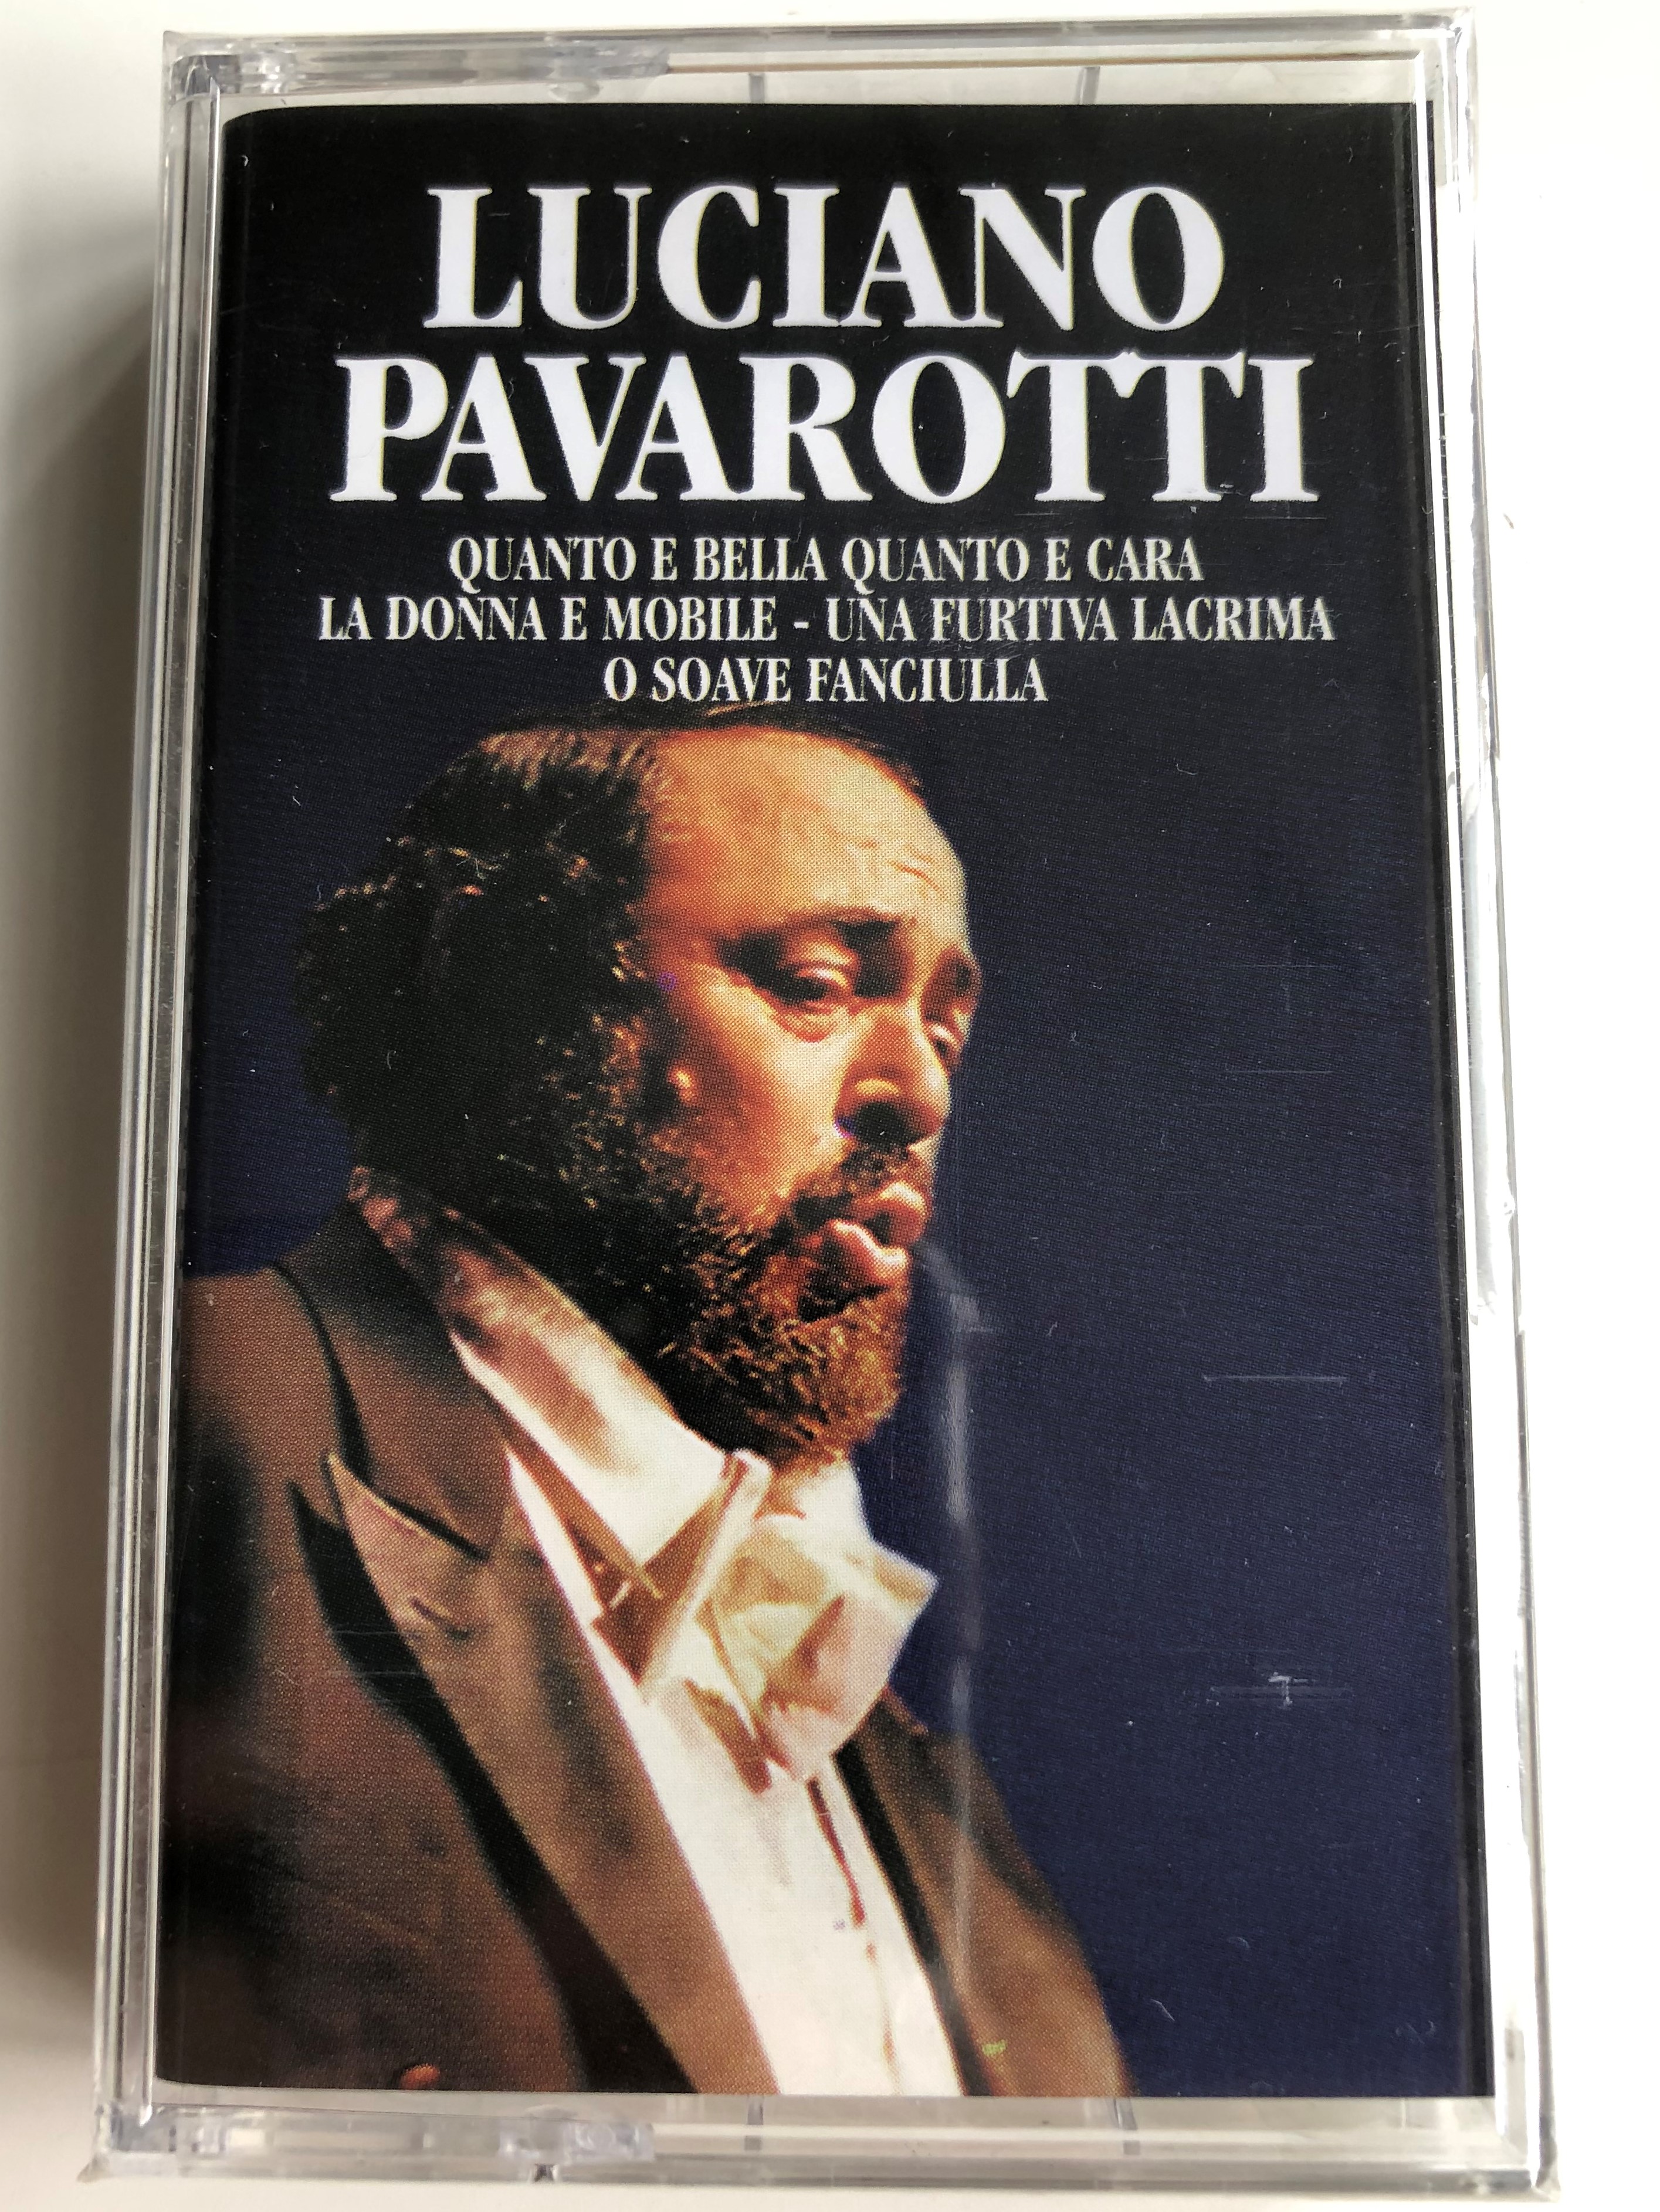 luciano-pavarotti-quanto-e-bella-quanto-e-cara-la-donna-e-mobile-une-furtiva-lacrima-o-soave-fanciulla-weton-wesgram-audio-cassette-rdmc016-1-.jpg